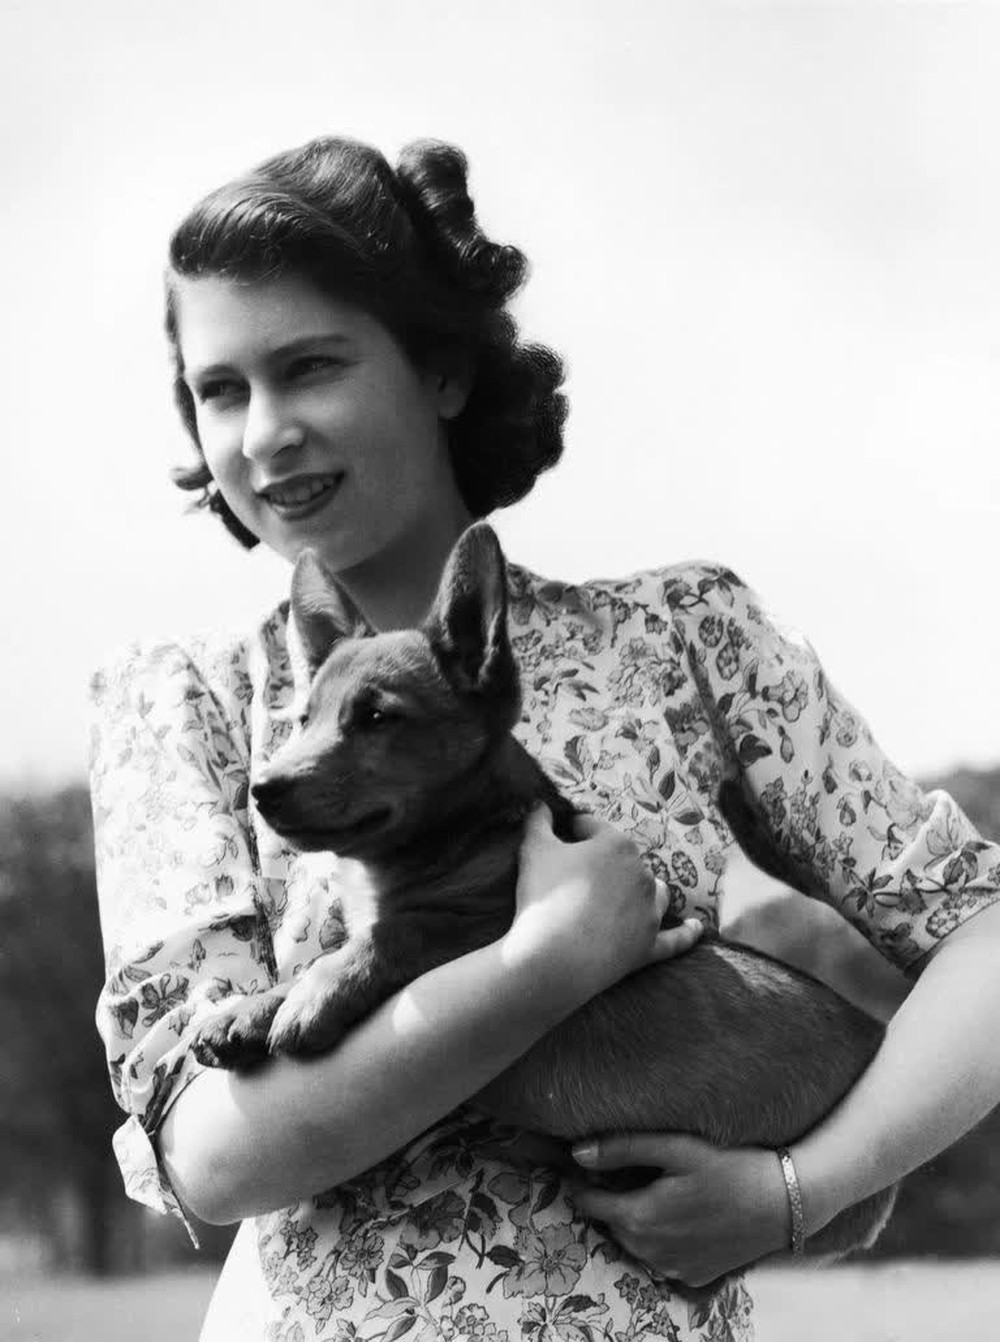 Bức thư đầy cảm động của Nữ vương gửi bác sĩ thú y chứng minh tình yêu vô bờ mà bà dành cho các chú cún - Ảnh 2.